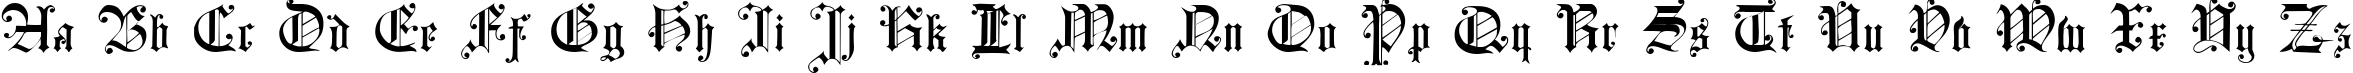 Пример написания английского алфавита шрифтом Courtrai